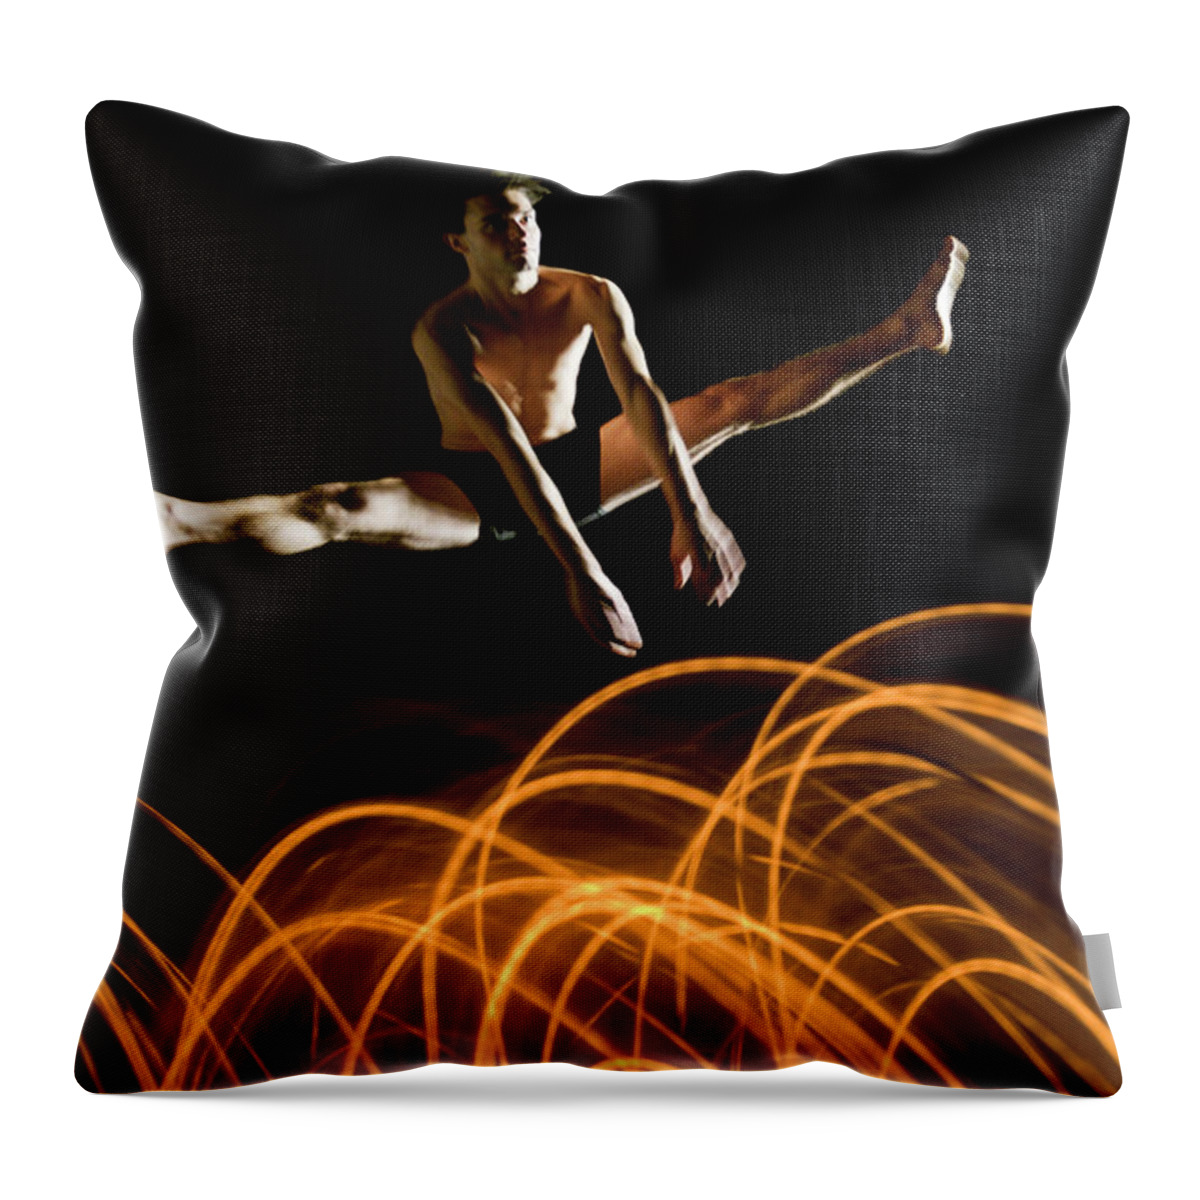 Ballet Dancer Throw Pillow featuring the photograph Flexible Dancer Jumps Over Abstract by John Rensten